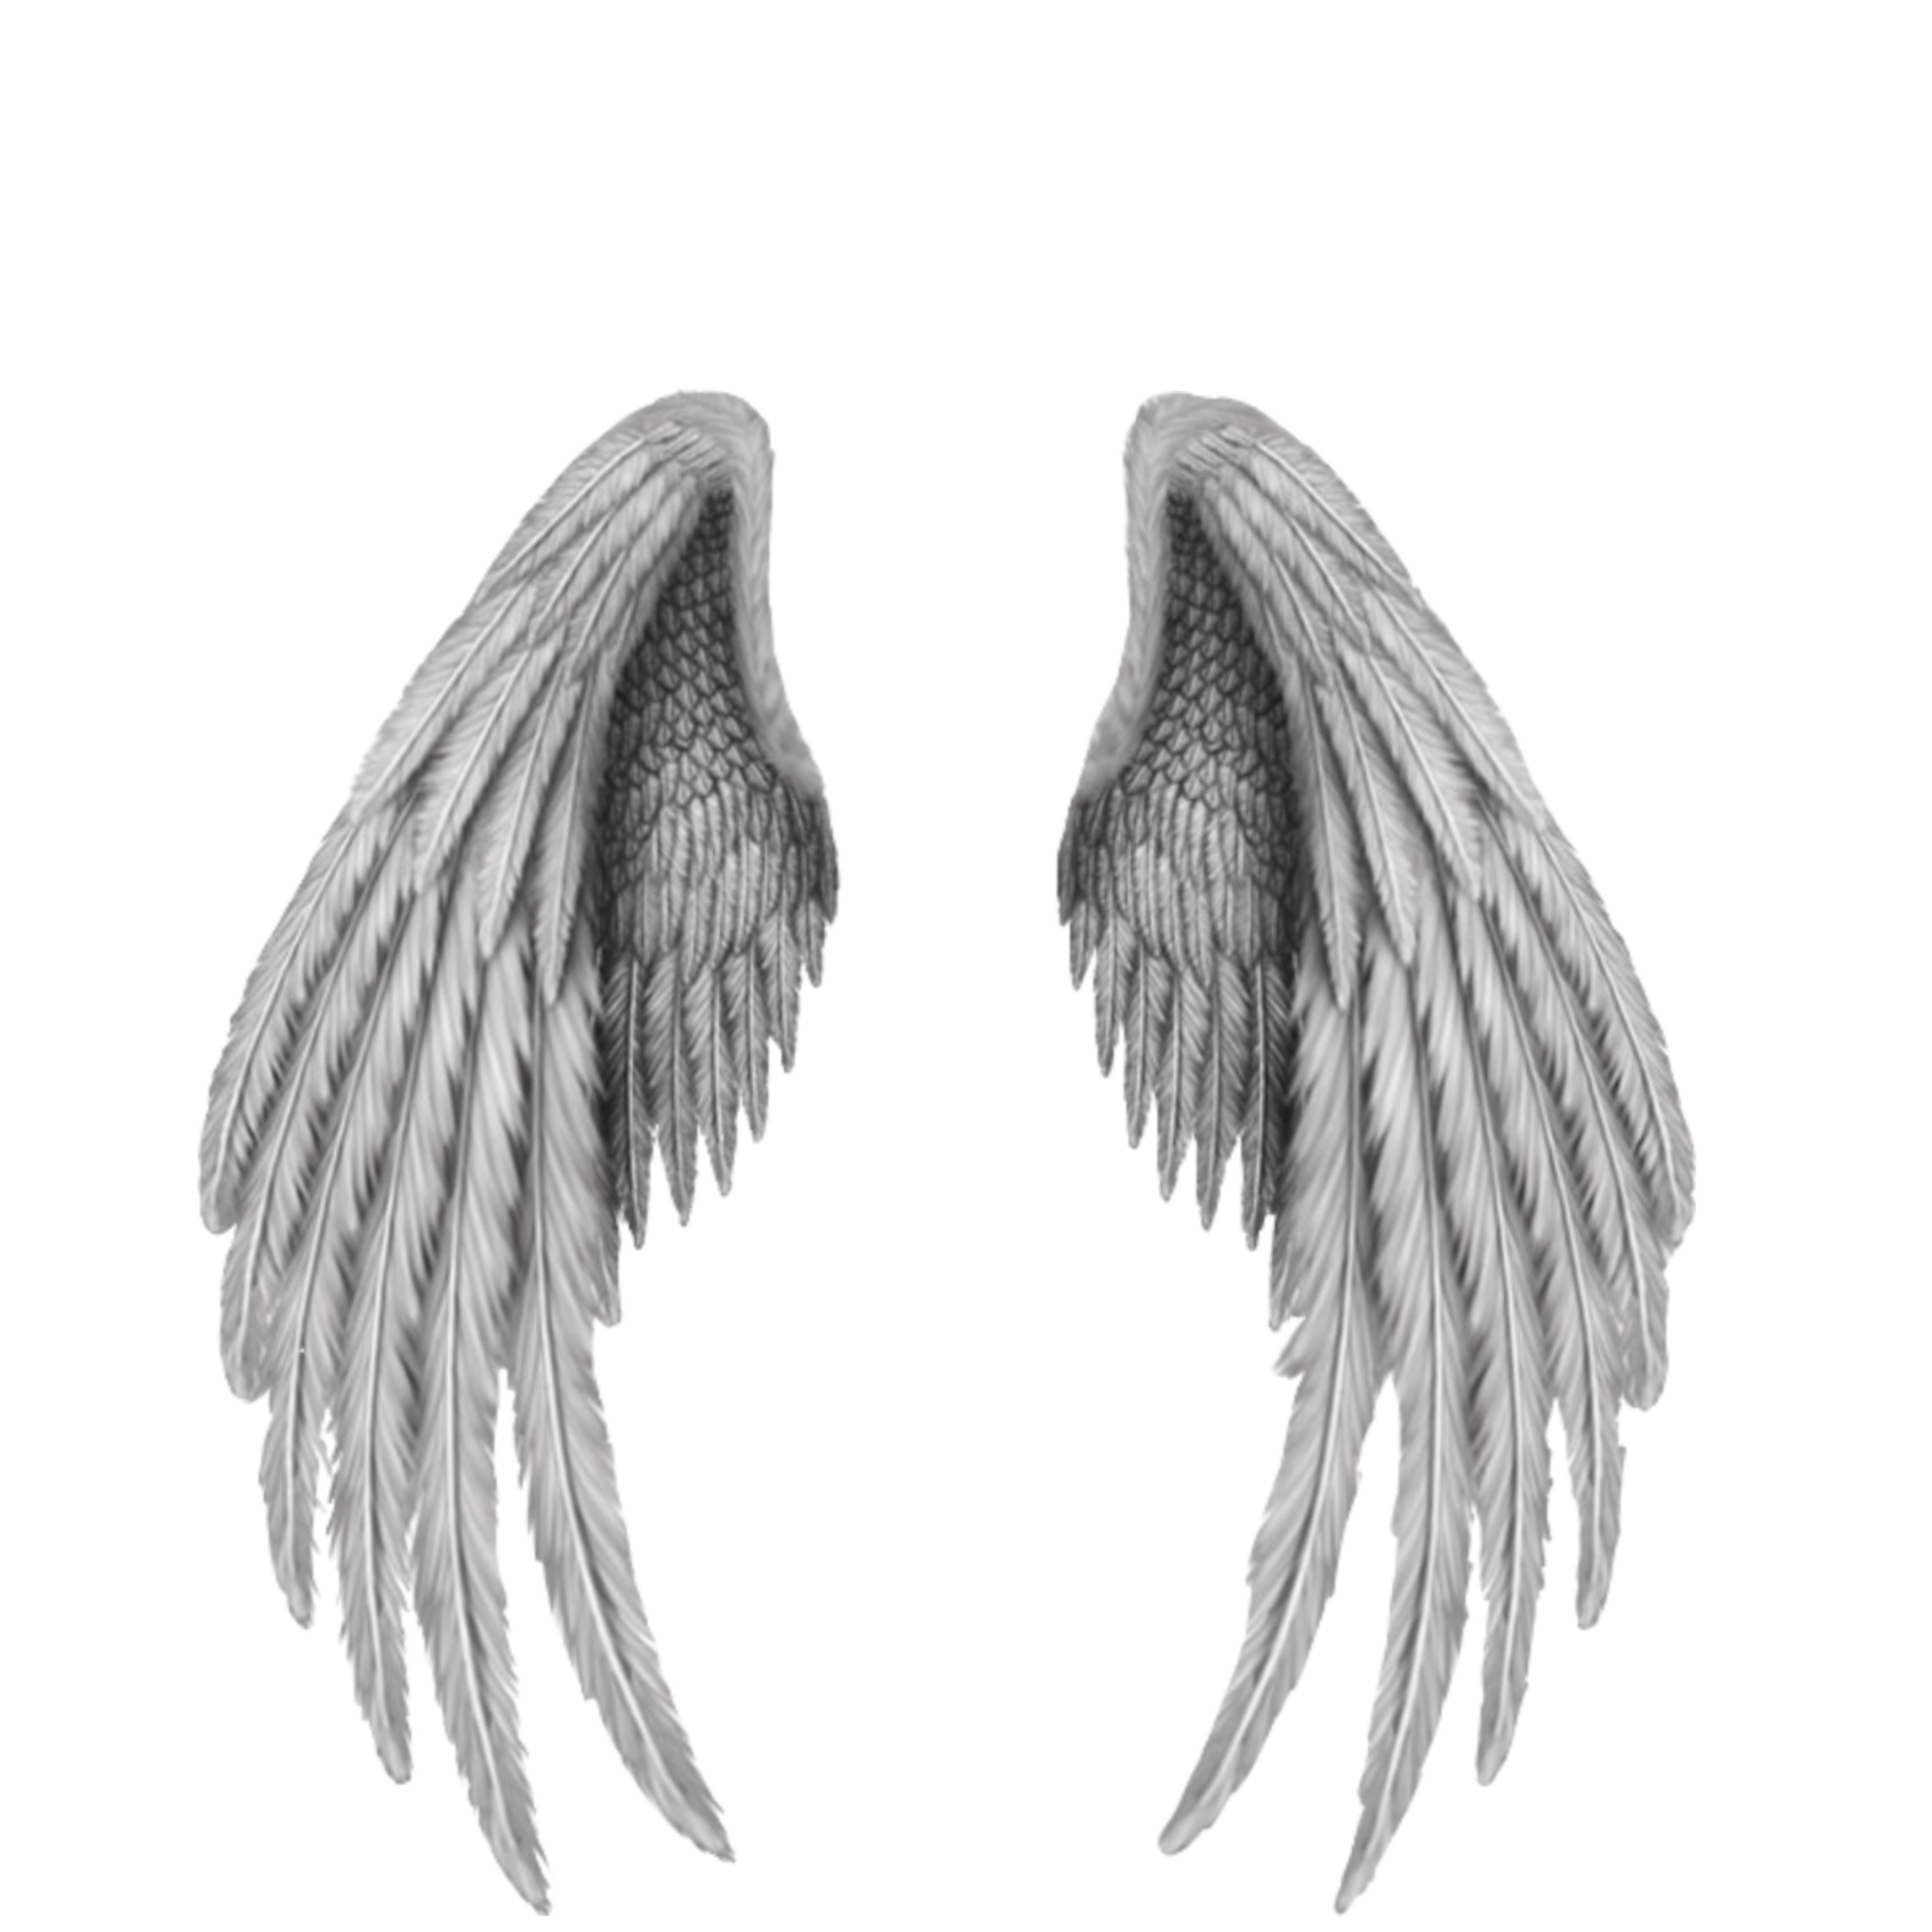 Сложенное крыло ангела